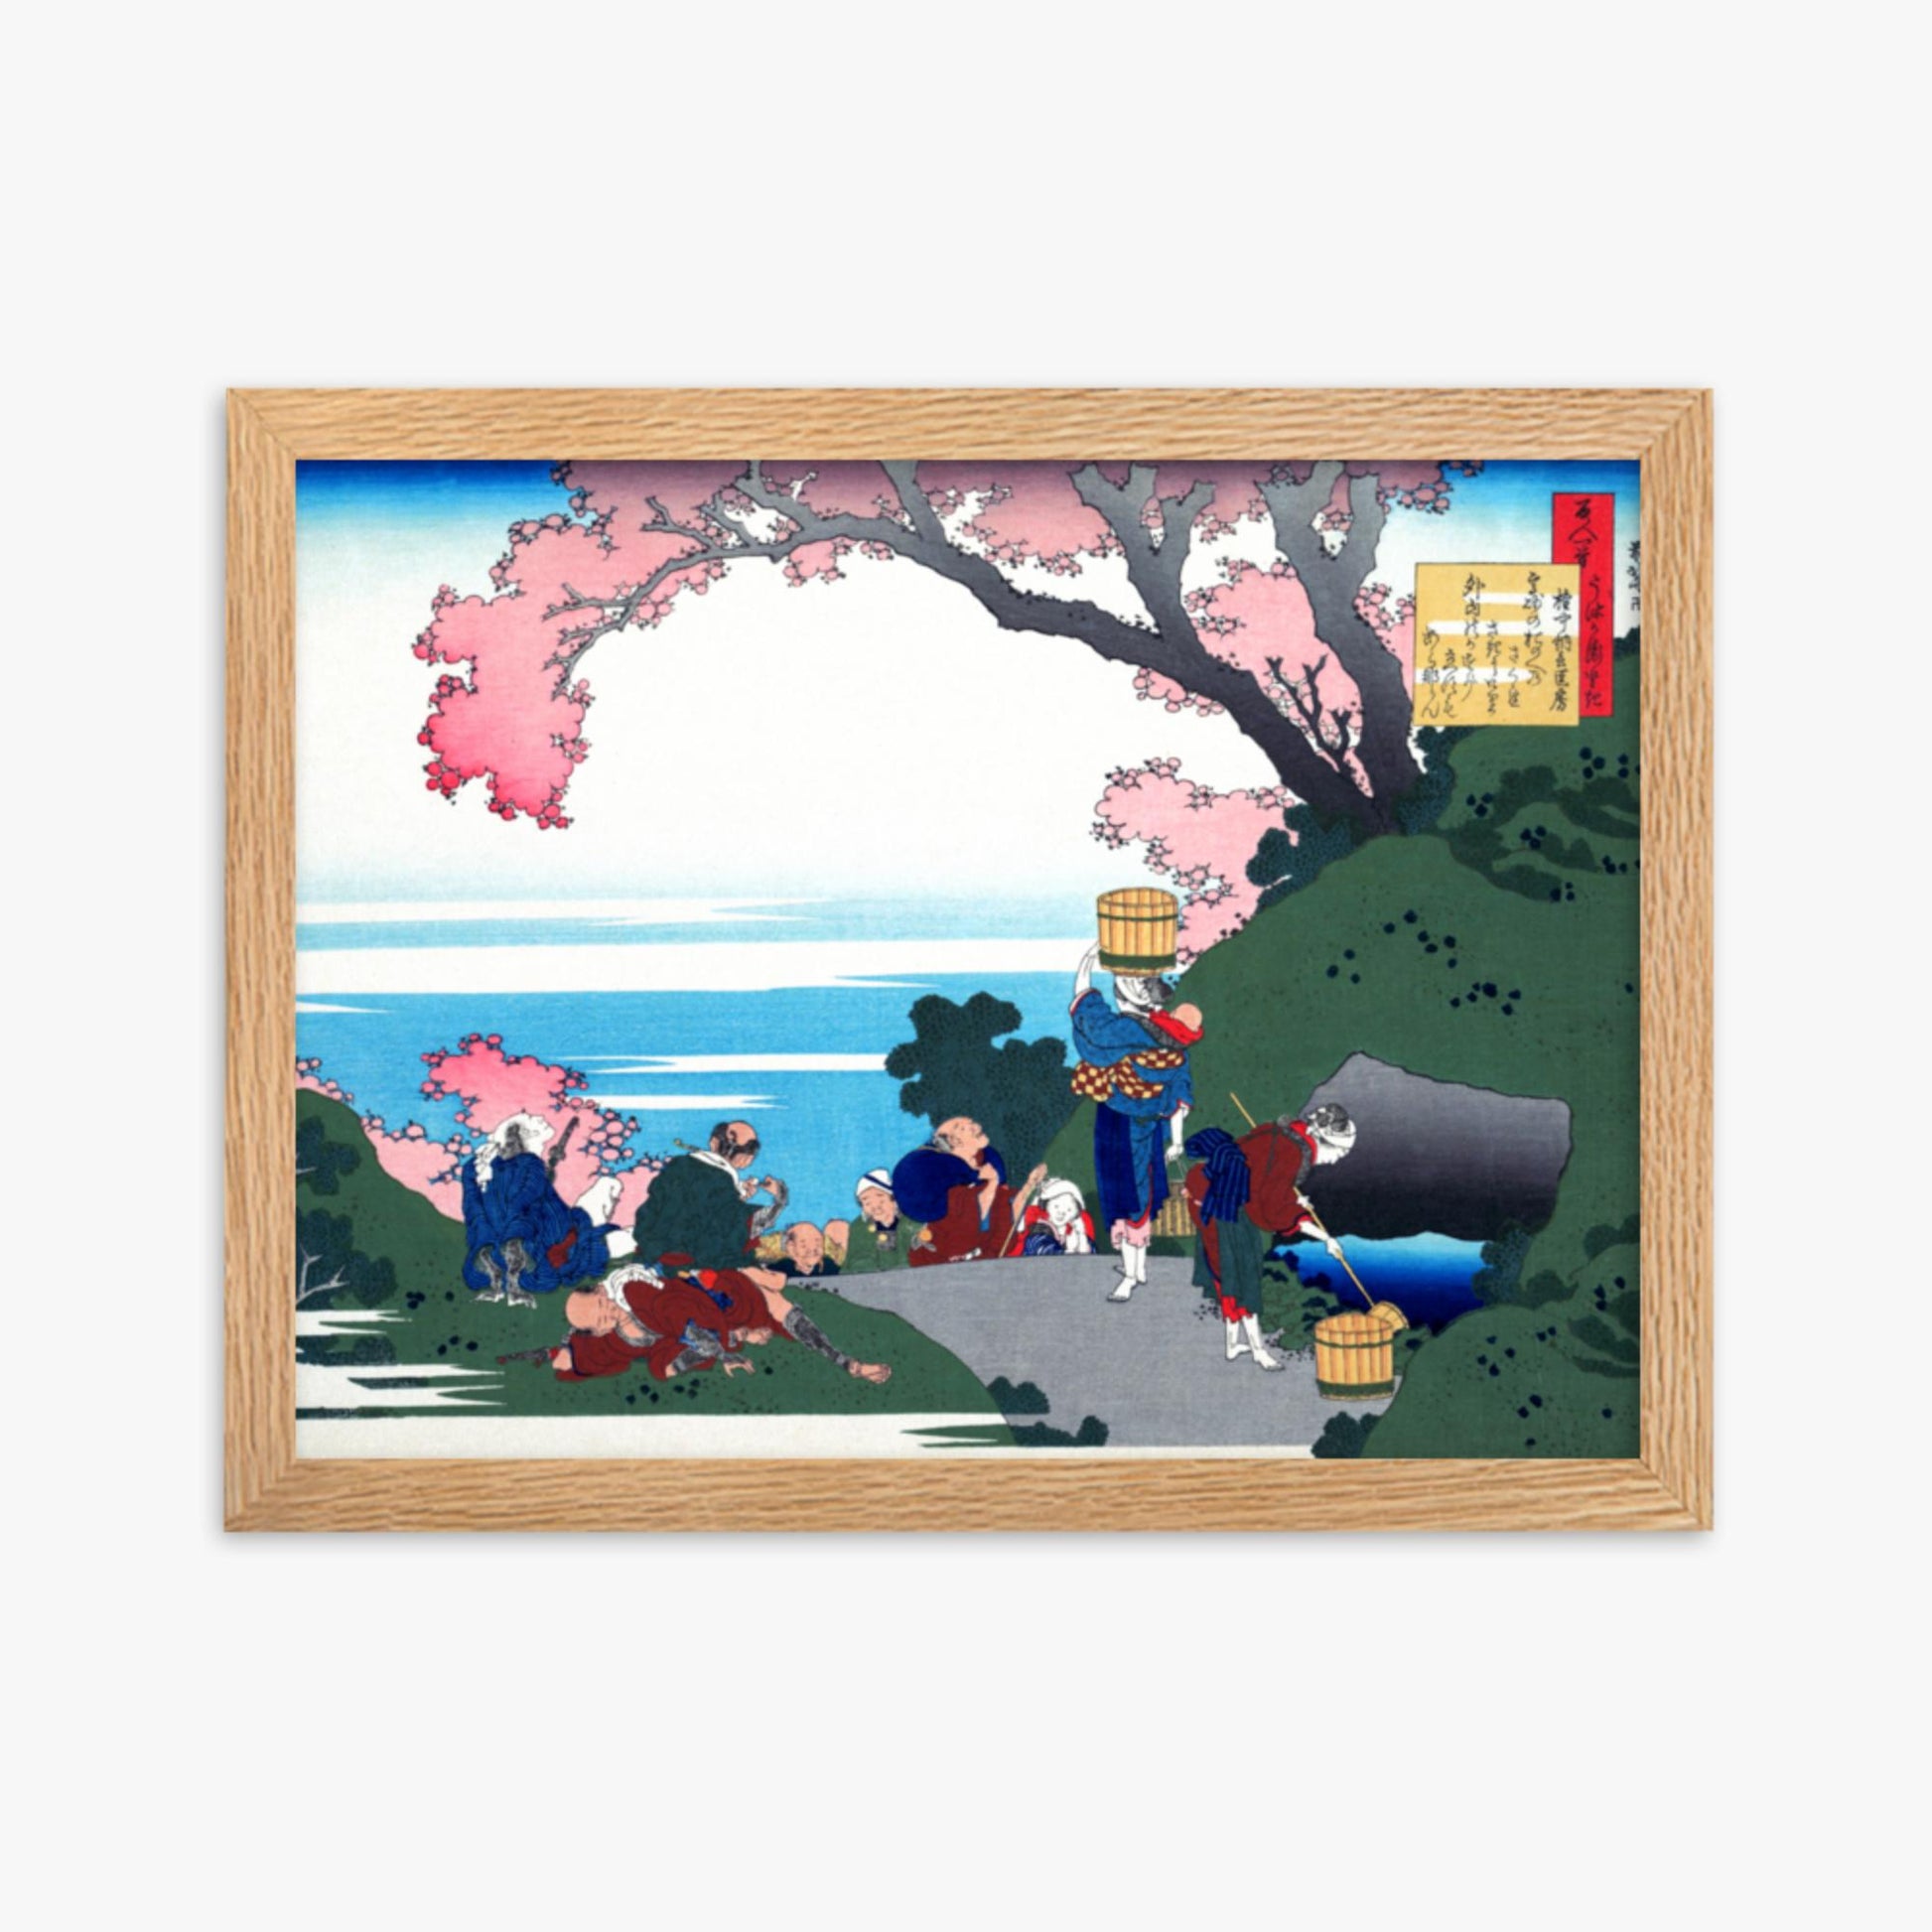 Katsushika Hokusai - Poem by Gon-chûnagon Masafusa 30x40 cm Poster With Oak Frame